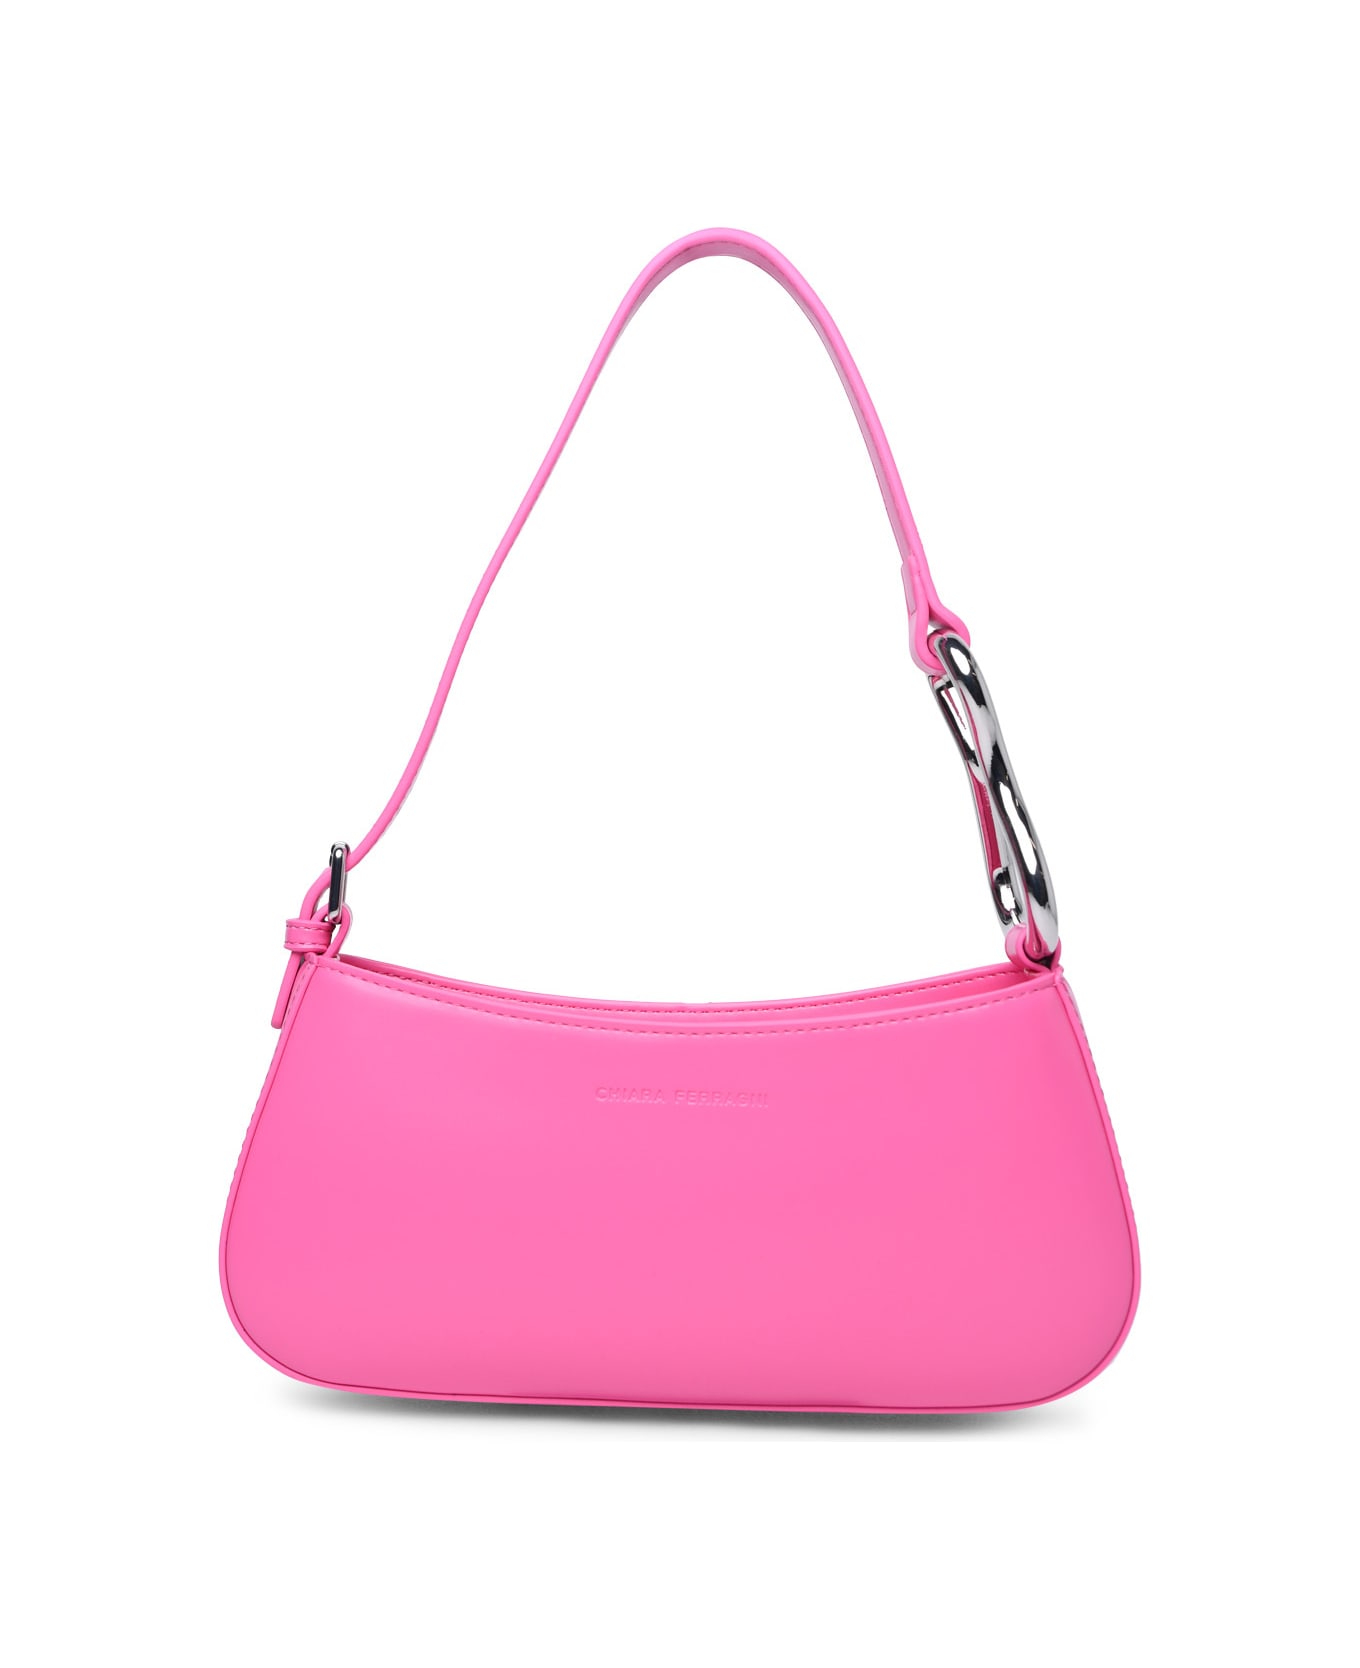 Chiara Ferragni 'cfloop' Pink Polyester Bag - Pink